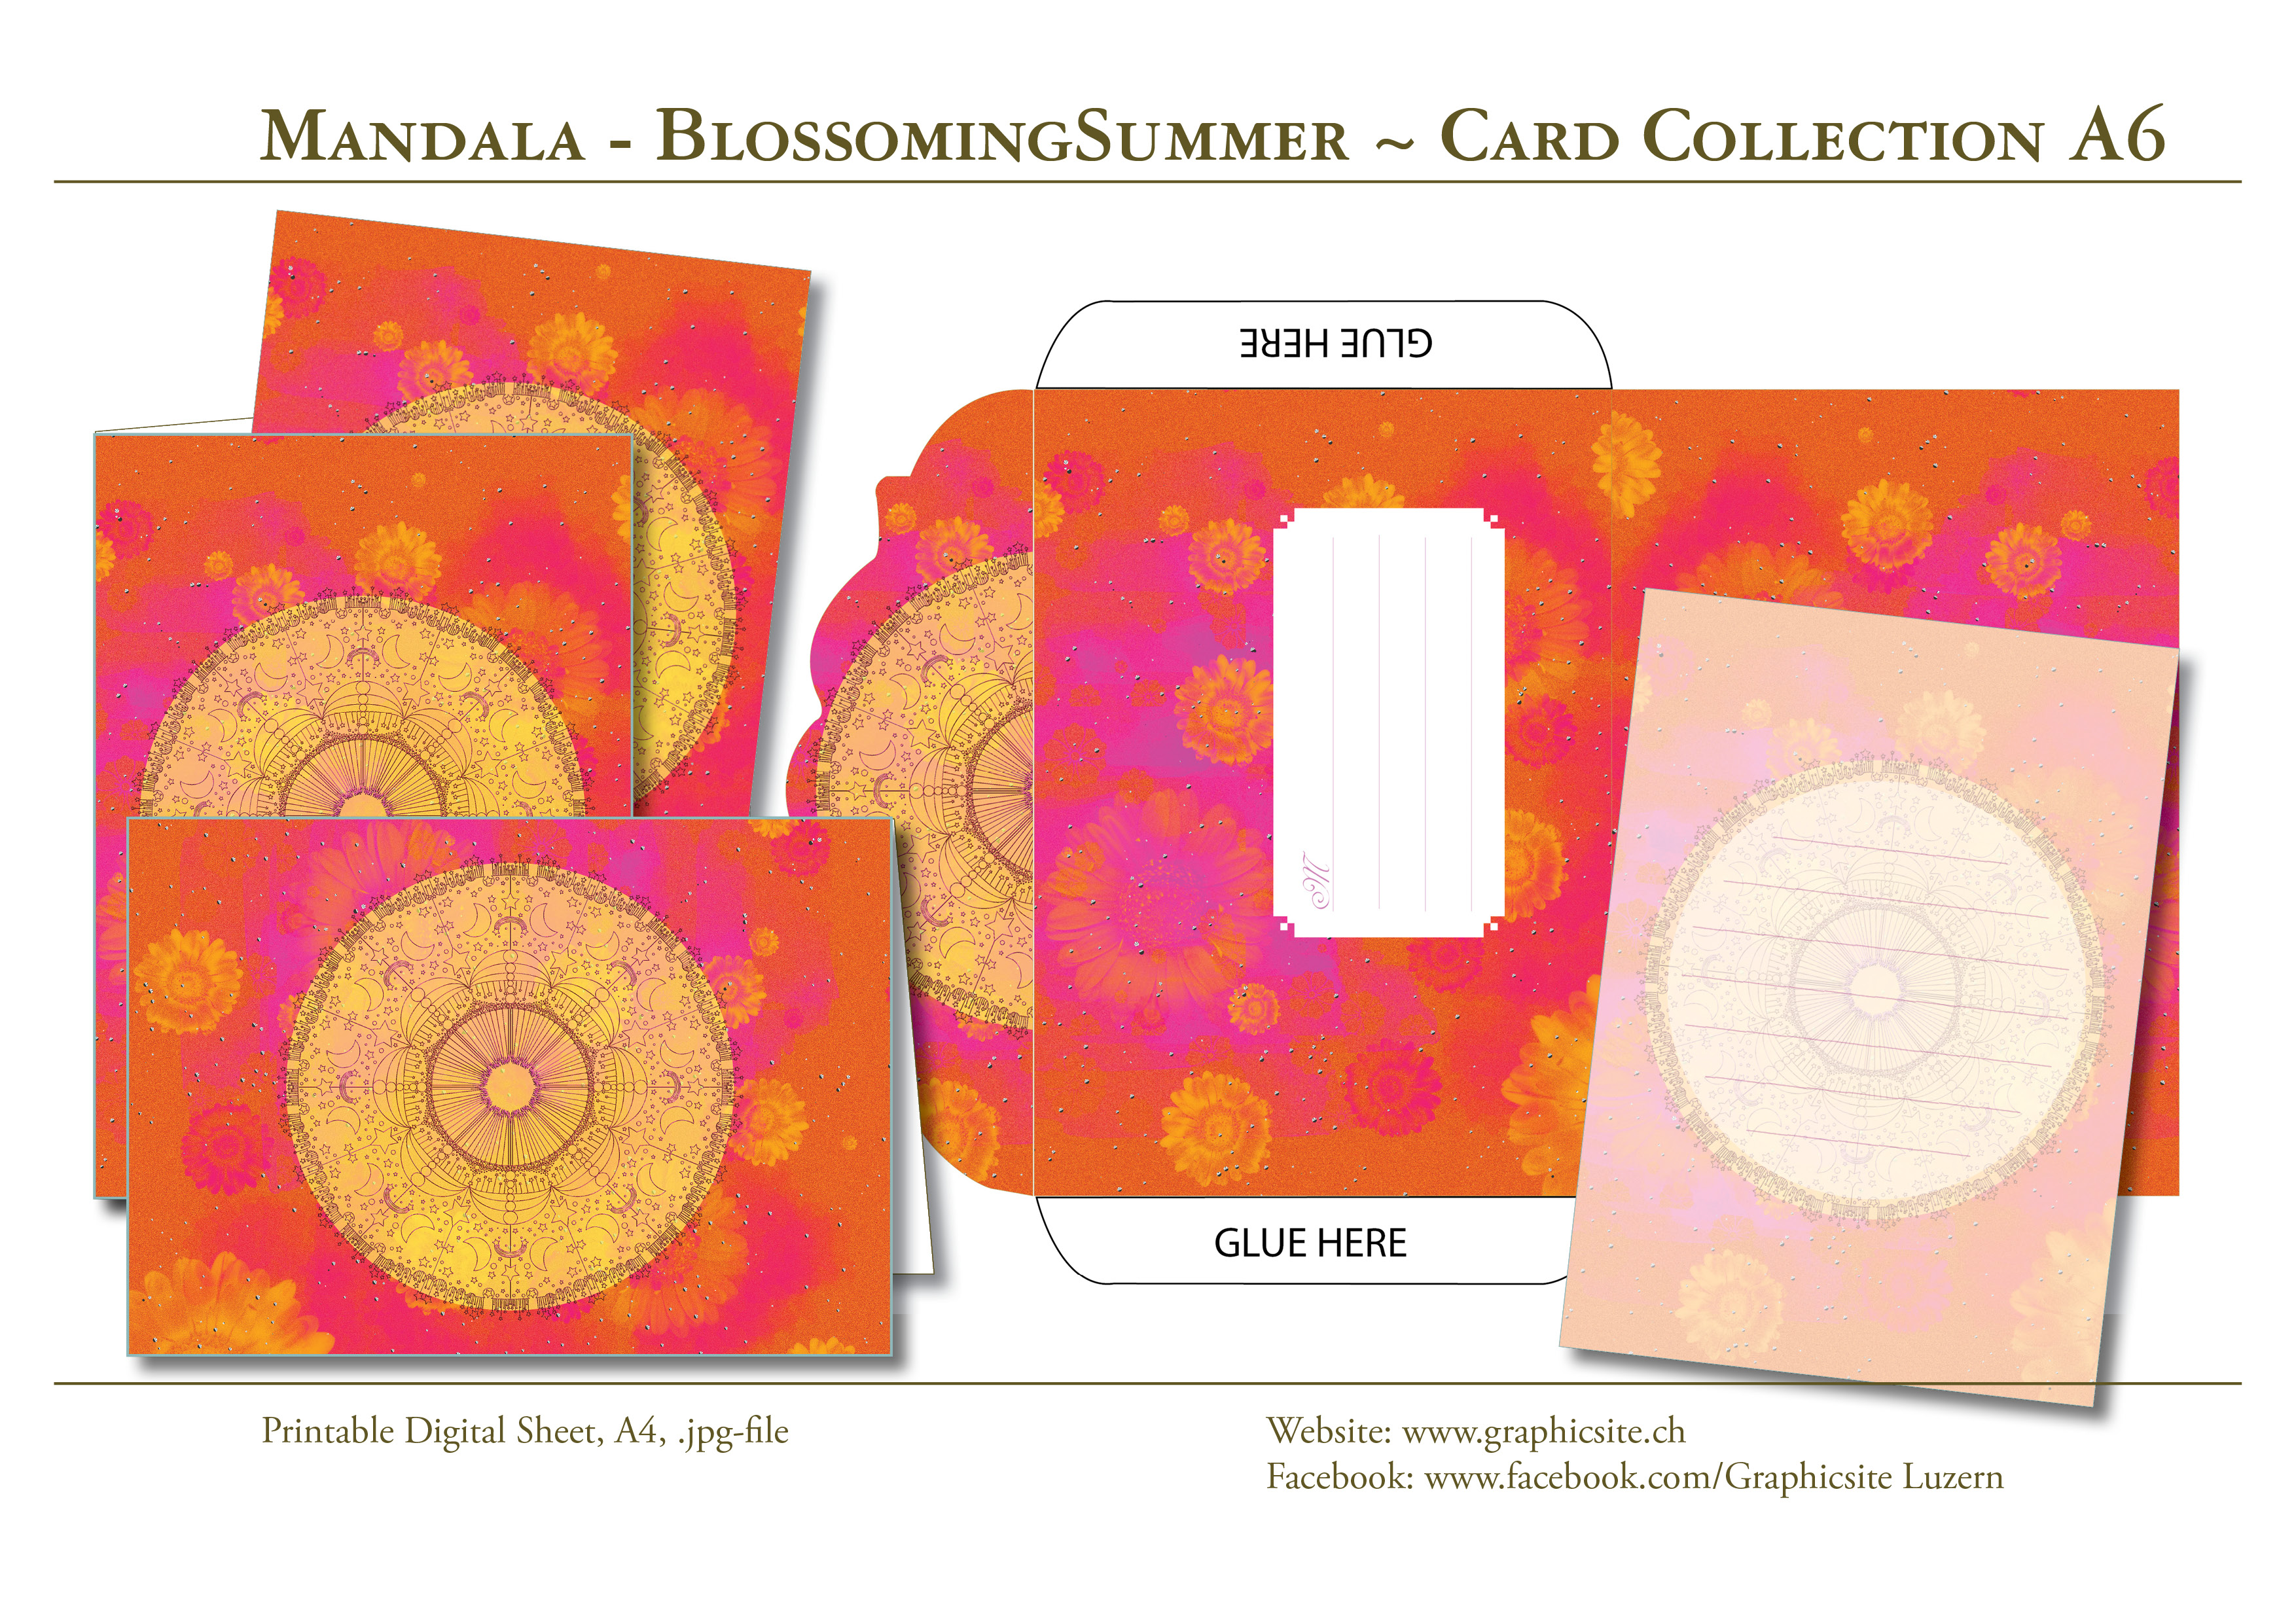 Karten selber drucken - Mandala BlossomingSummer - Karten, Grusskarten, Kuvert, Grafiker Luzern, Schweiz